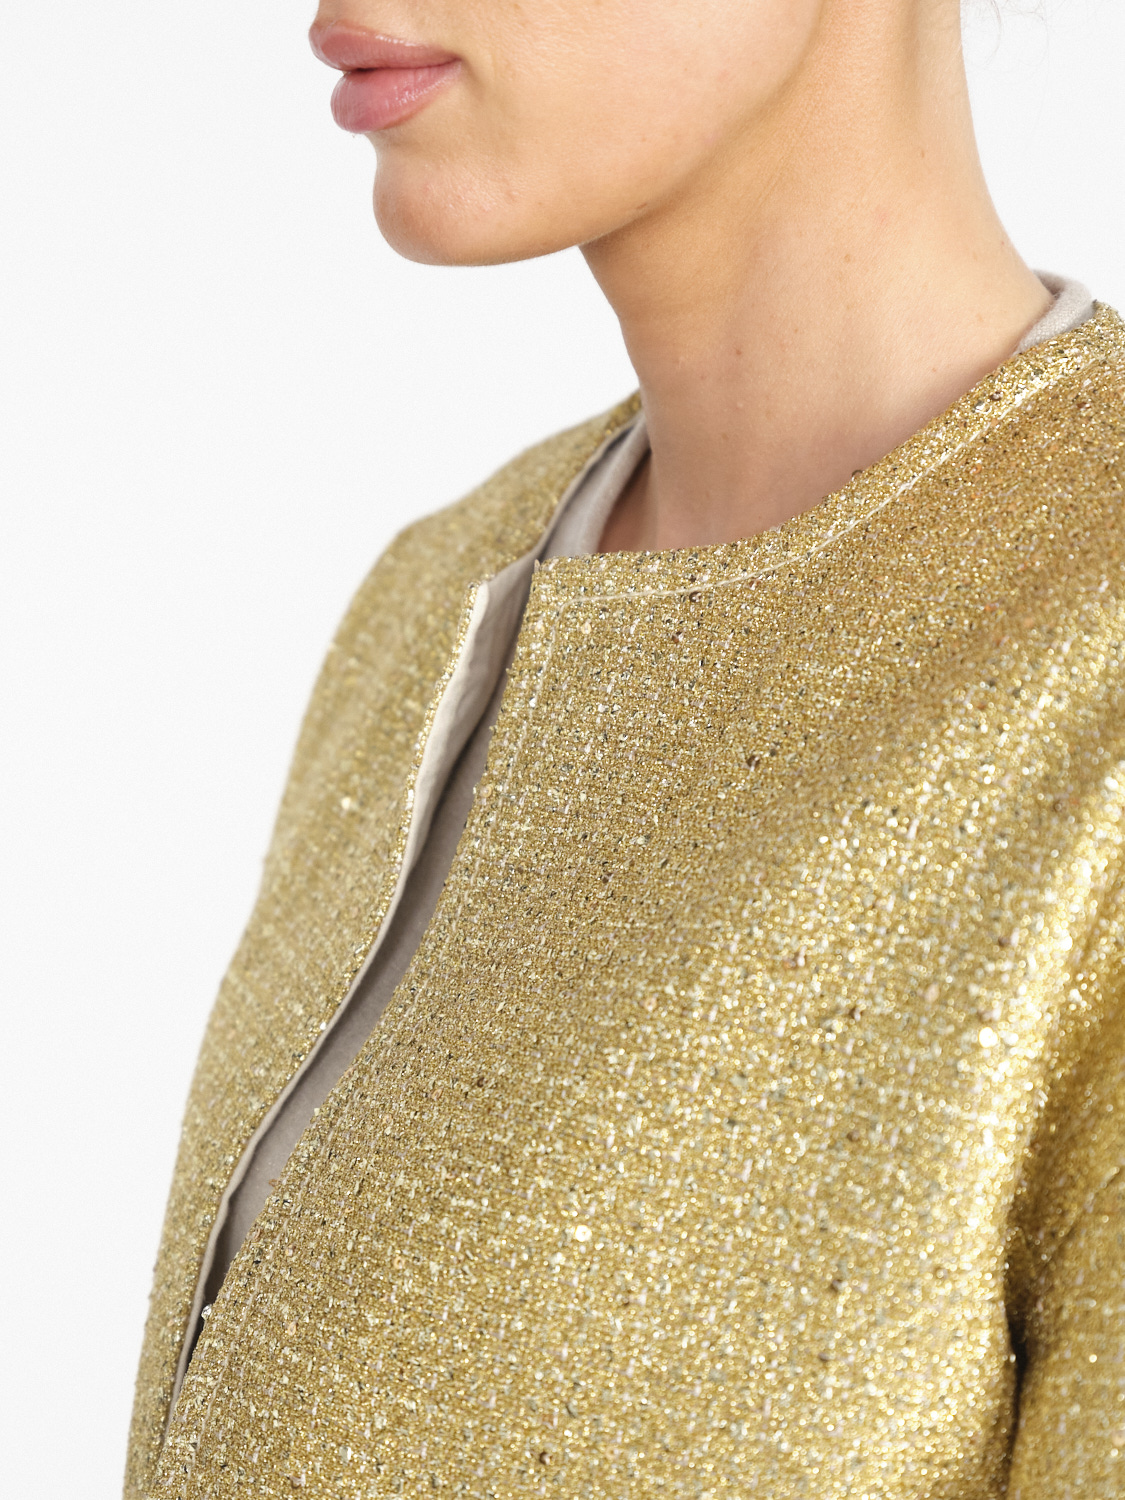 Odeeh Gold Brocade - Brocade blazer with lurex details  gold 36